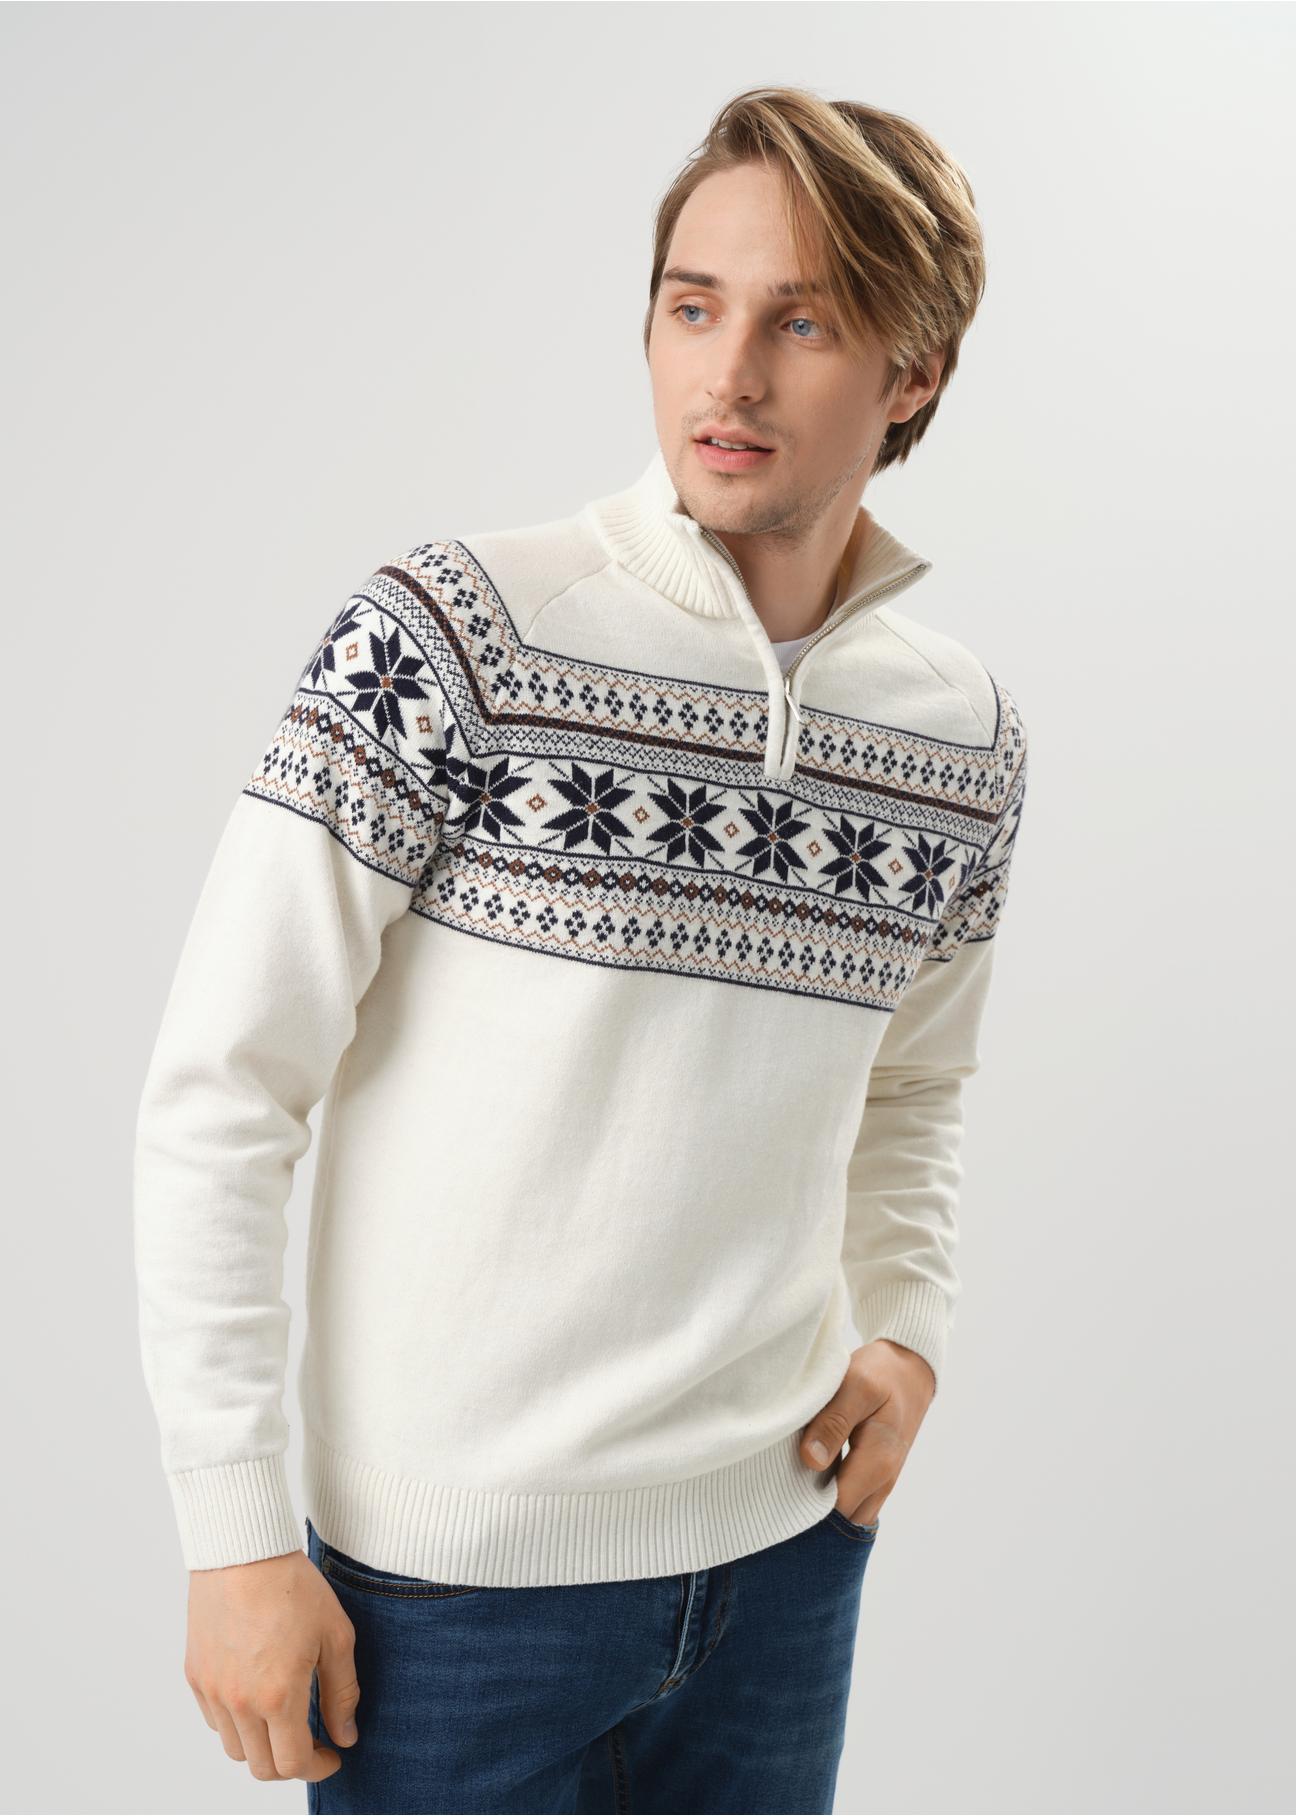 Kremowy sweter męski we wzór norweski SWEMT-0133-12(Z23)